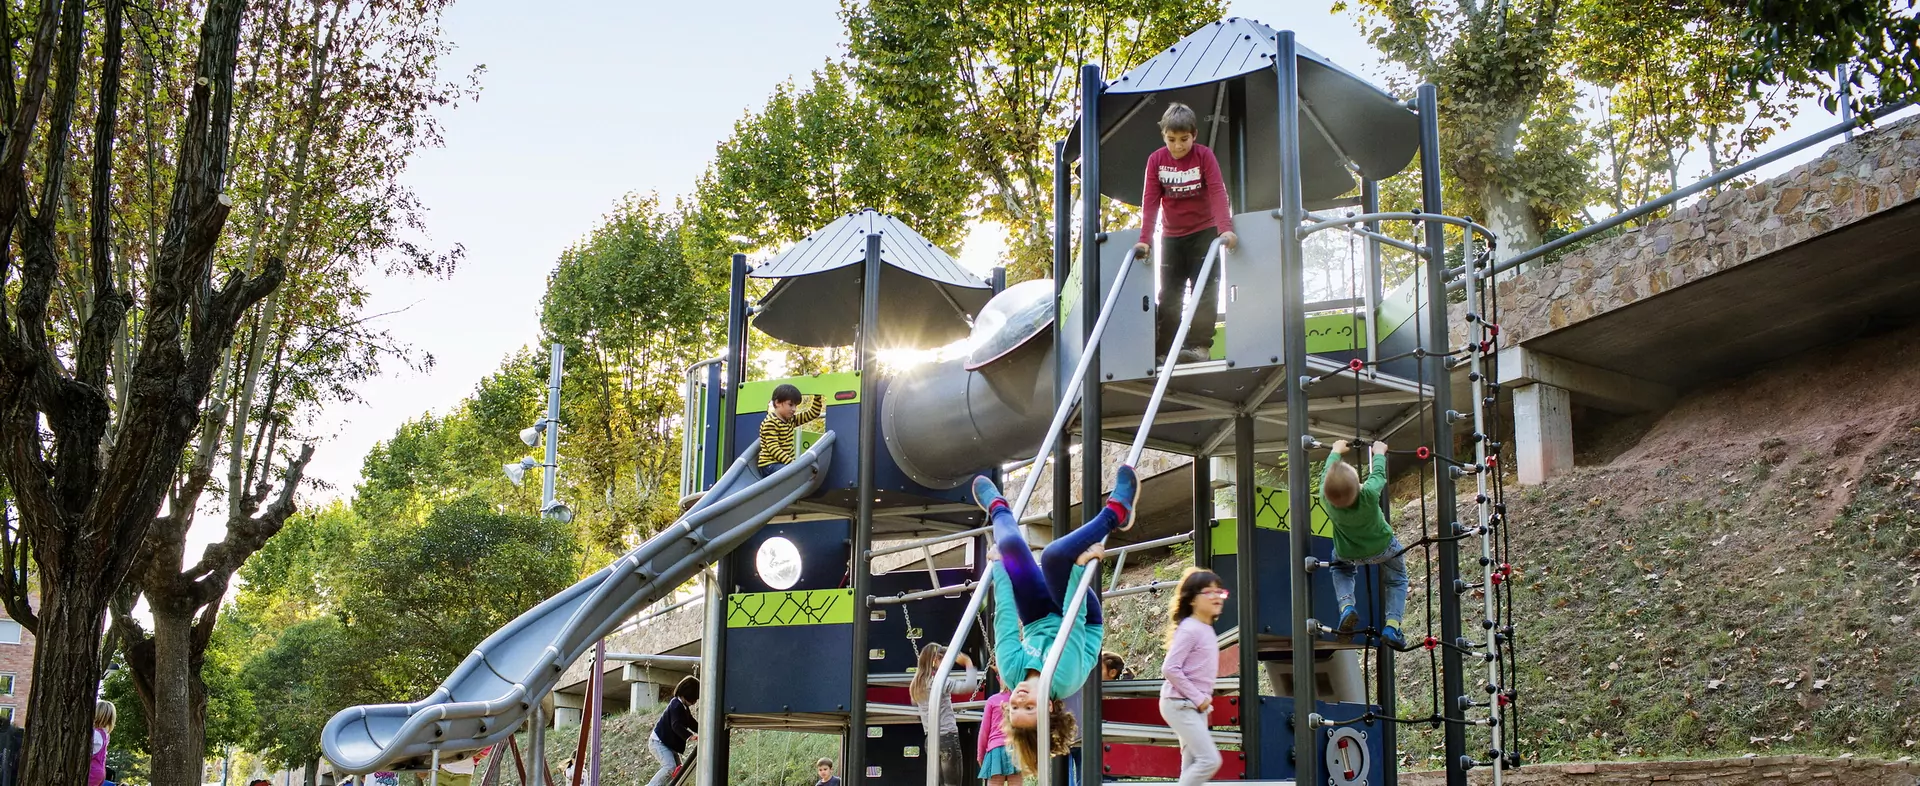 Villaggio gioco per parchi per bambini con montanti in alluminio - 1 scivolo  in vetroresina , 1 tunnel , 1 pertica ed 1 risalita